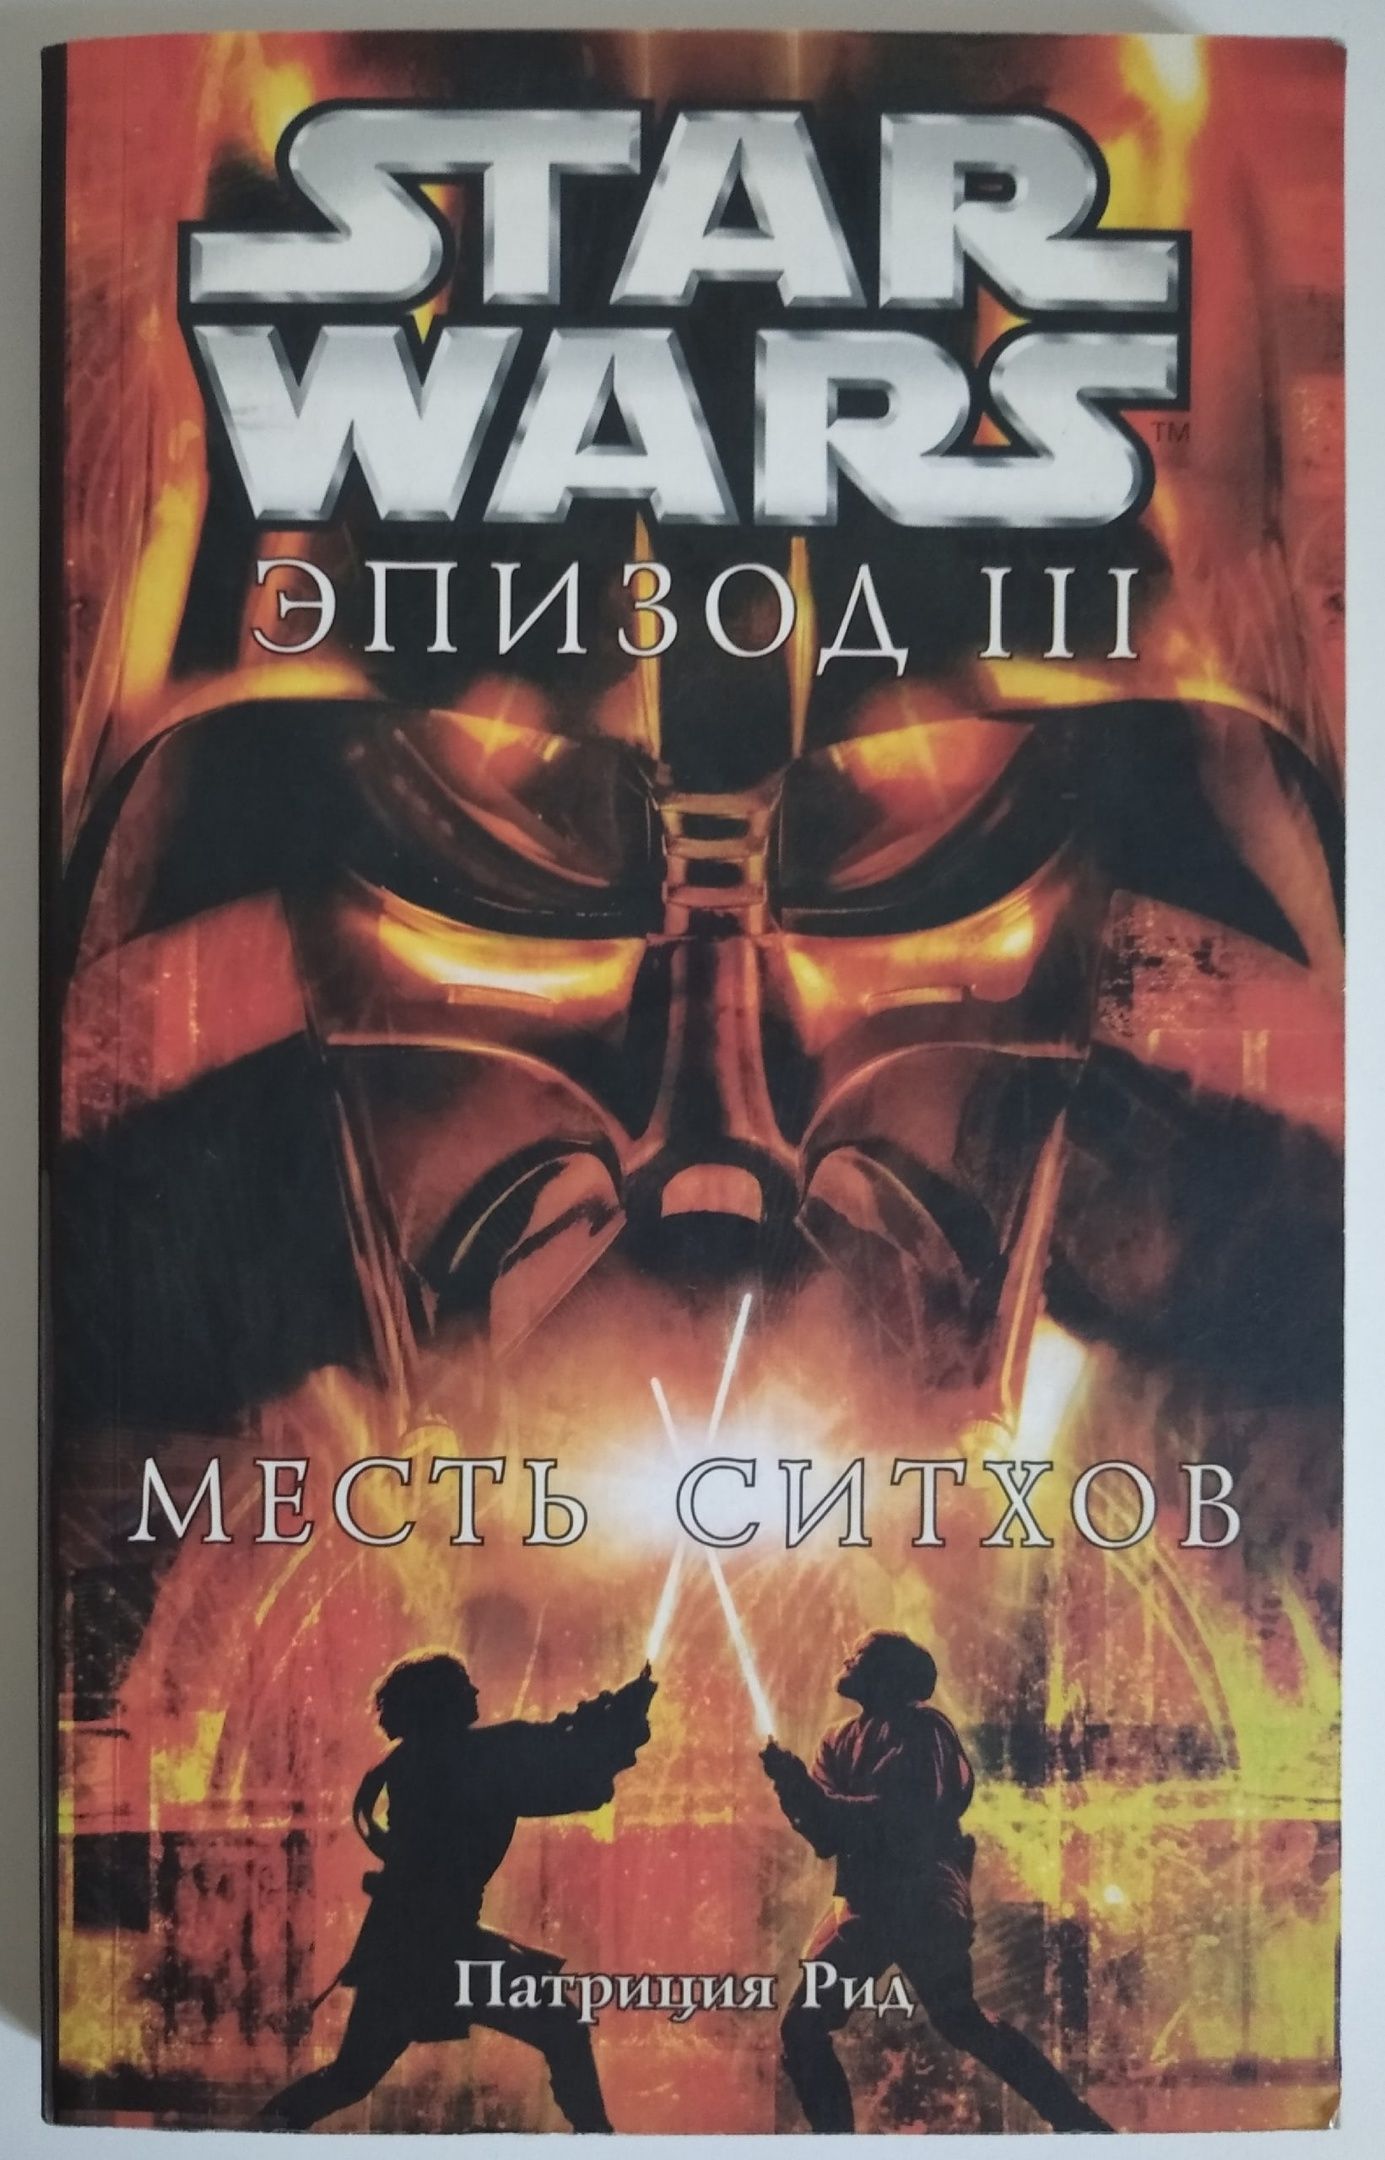 Книги звездные войны читать. Звездные войны 3 месть ситхов обложка. Star Wars месть ситхов книга. Книга Звёздные войны эпизод 3. Книги по звездным войнам.